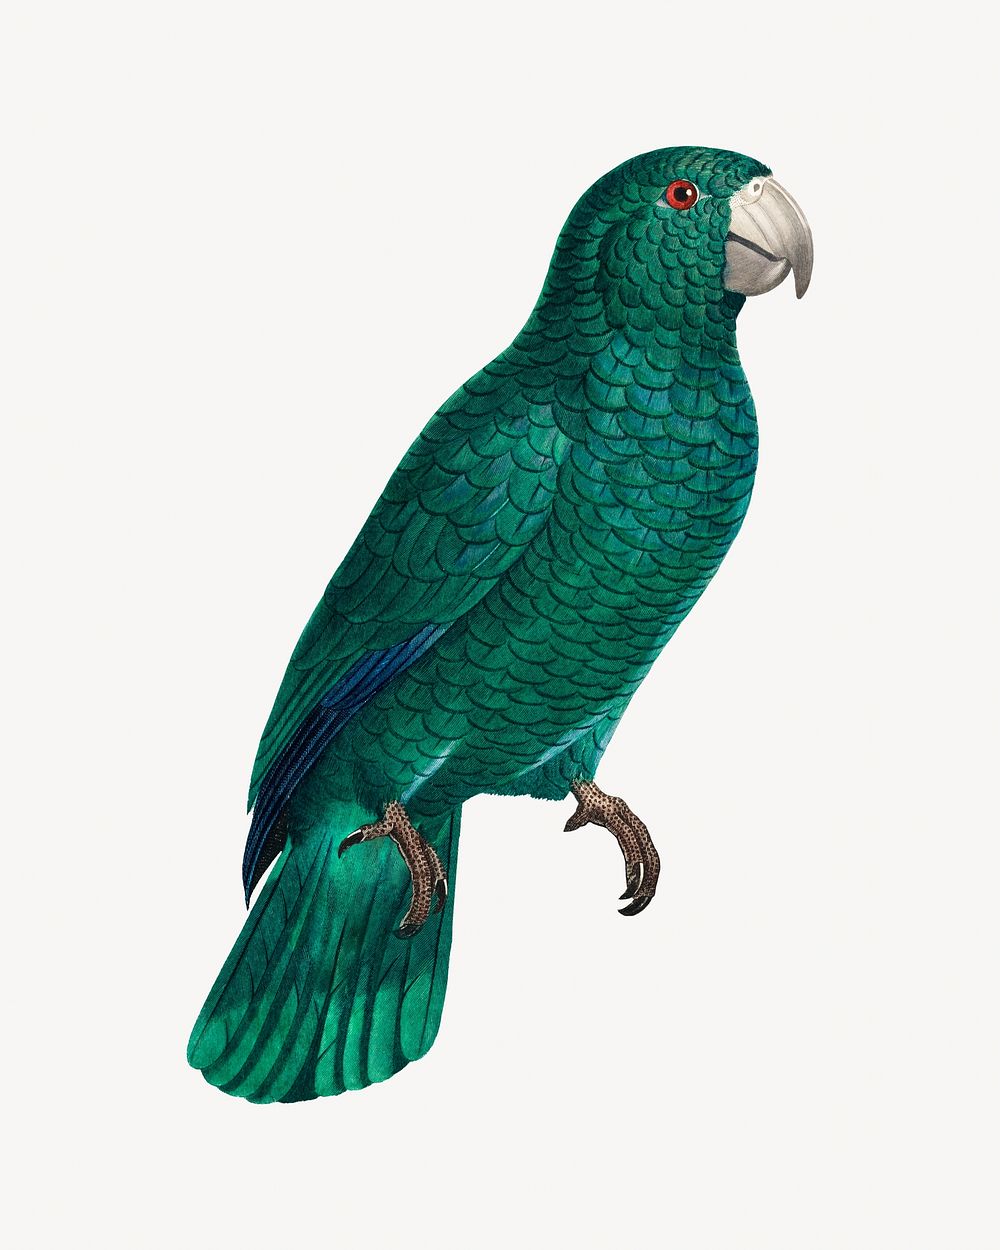 Cuban Amazon parrot bird, vintage animal illustration